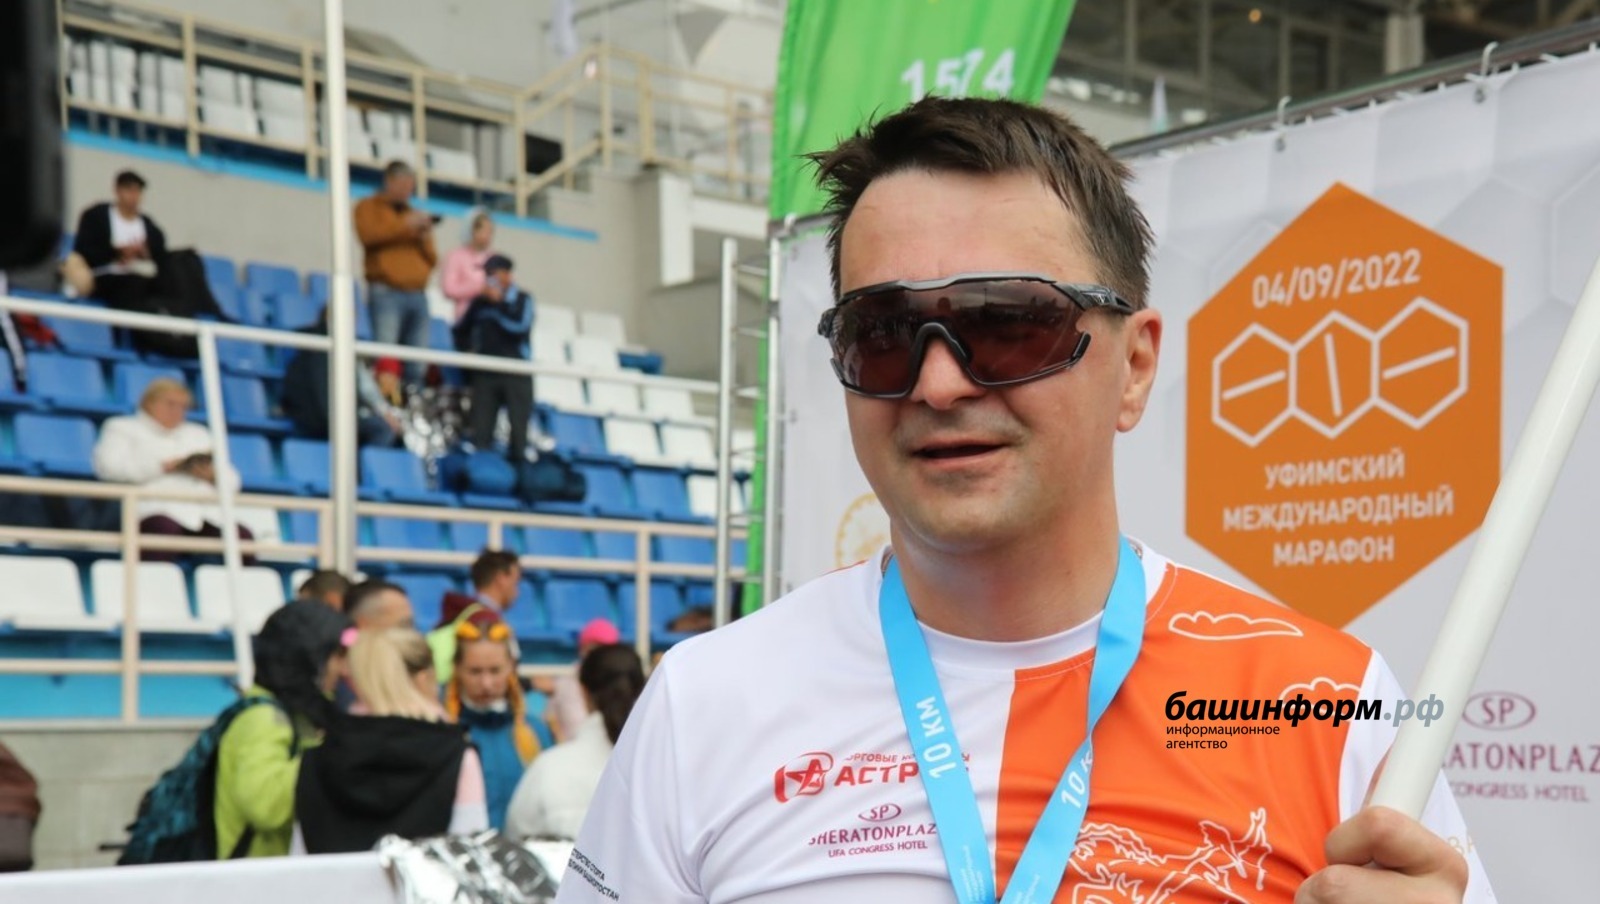 Руководитель администрации Главы Республики Башкортостан Максим Забелин пробежал дистанцию на международном марафоне